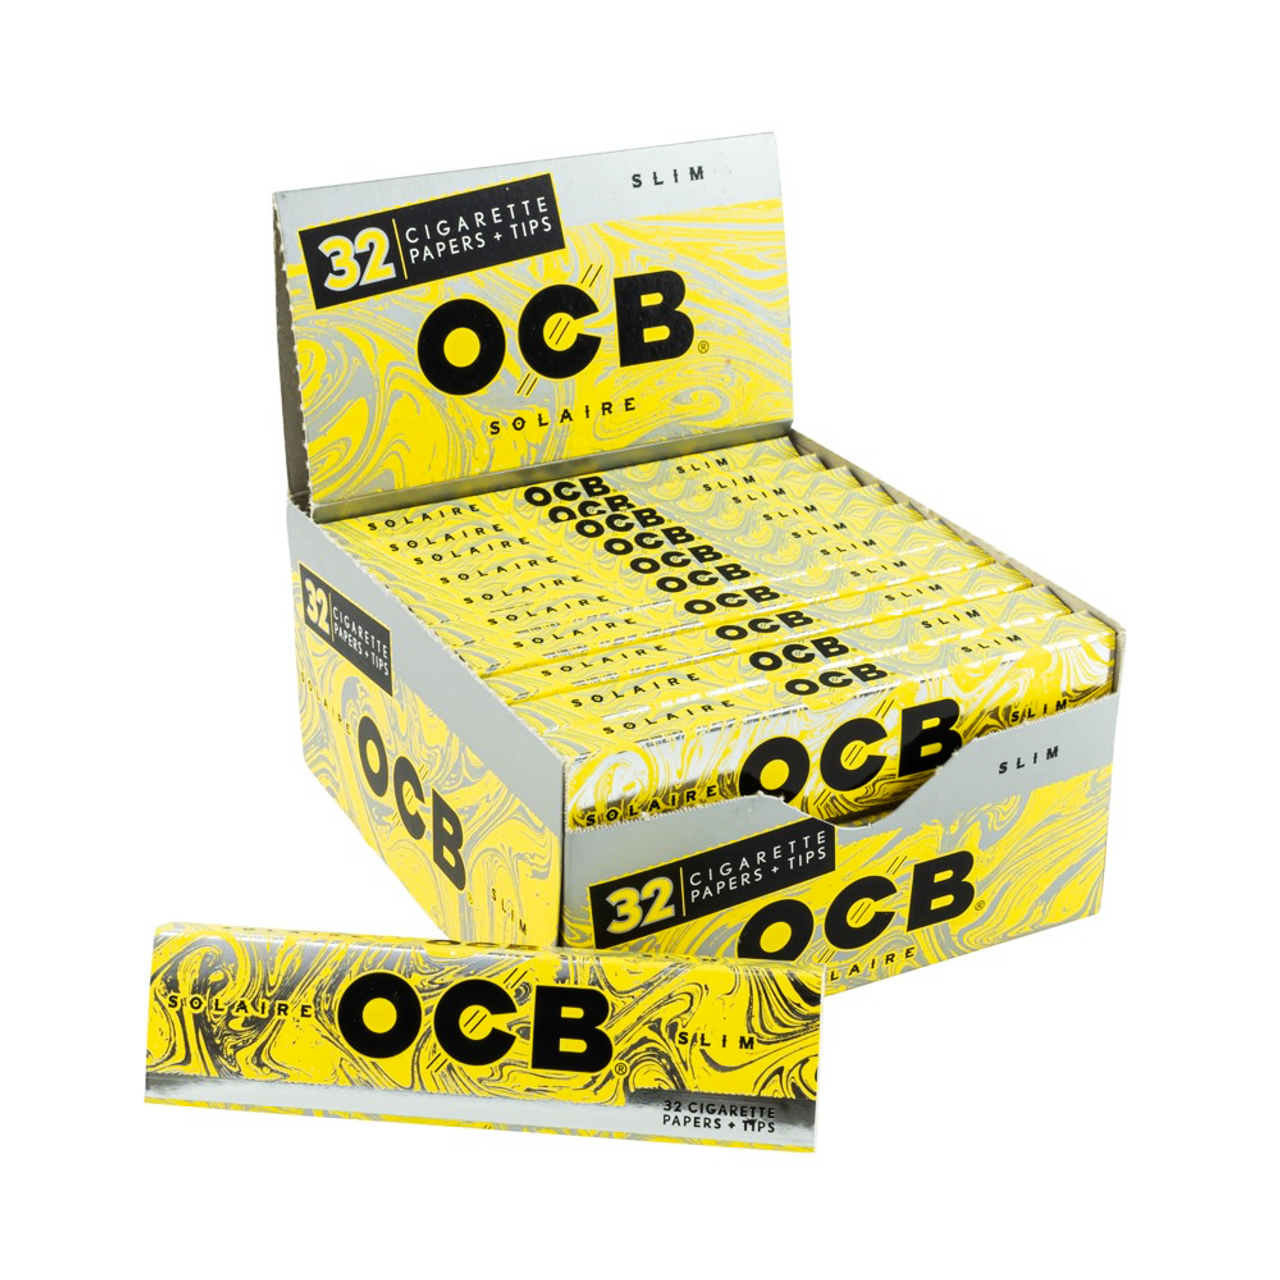  OCB Premium Slim 24 Booklets Cigarette Rollin Paper